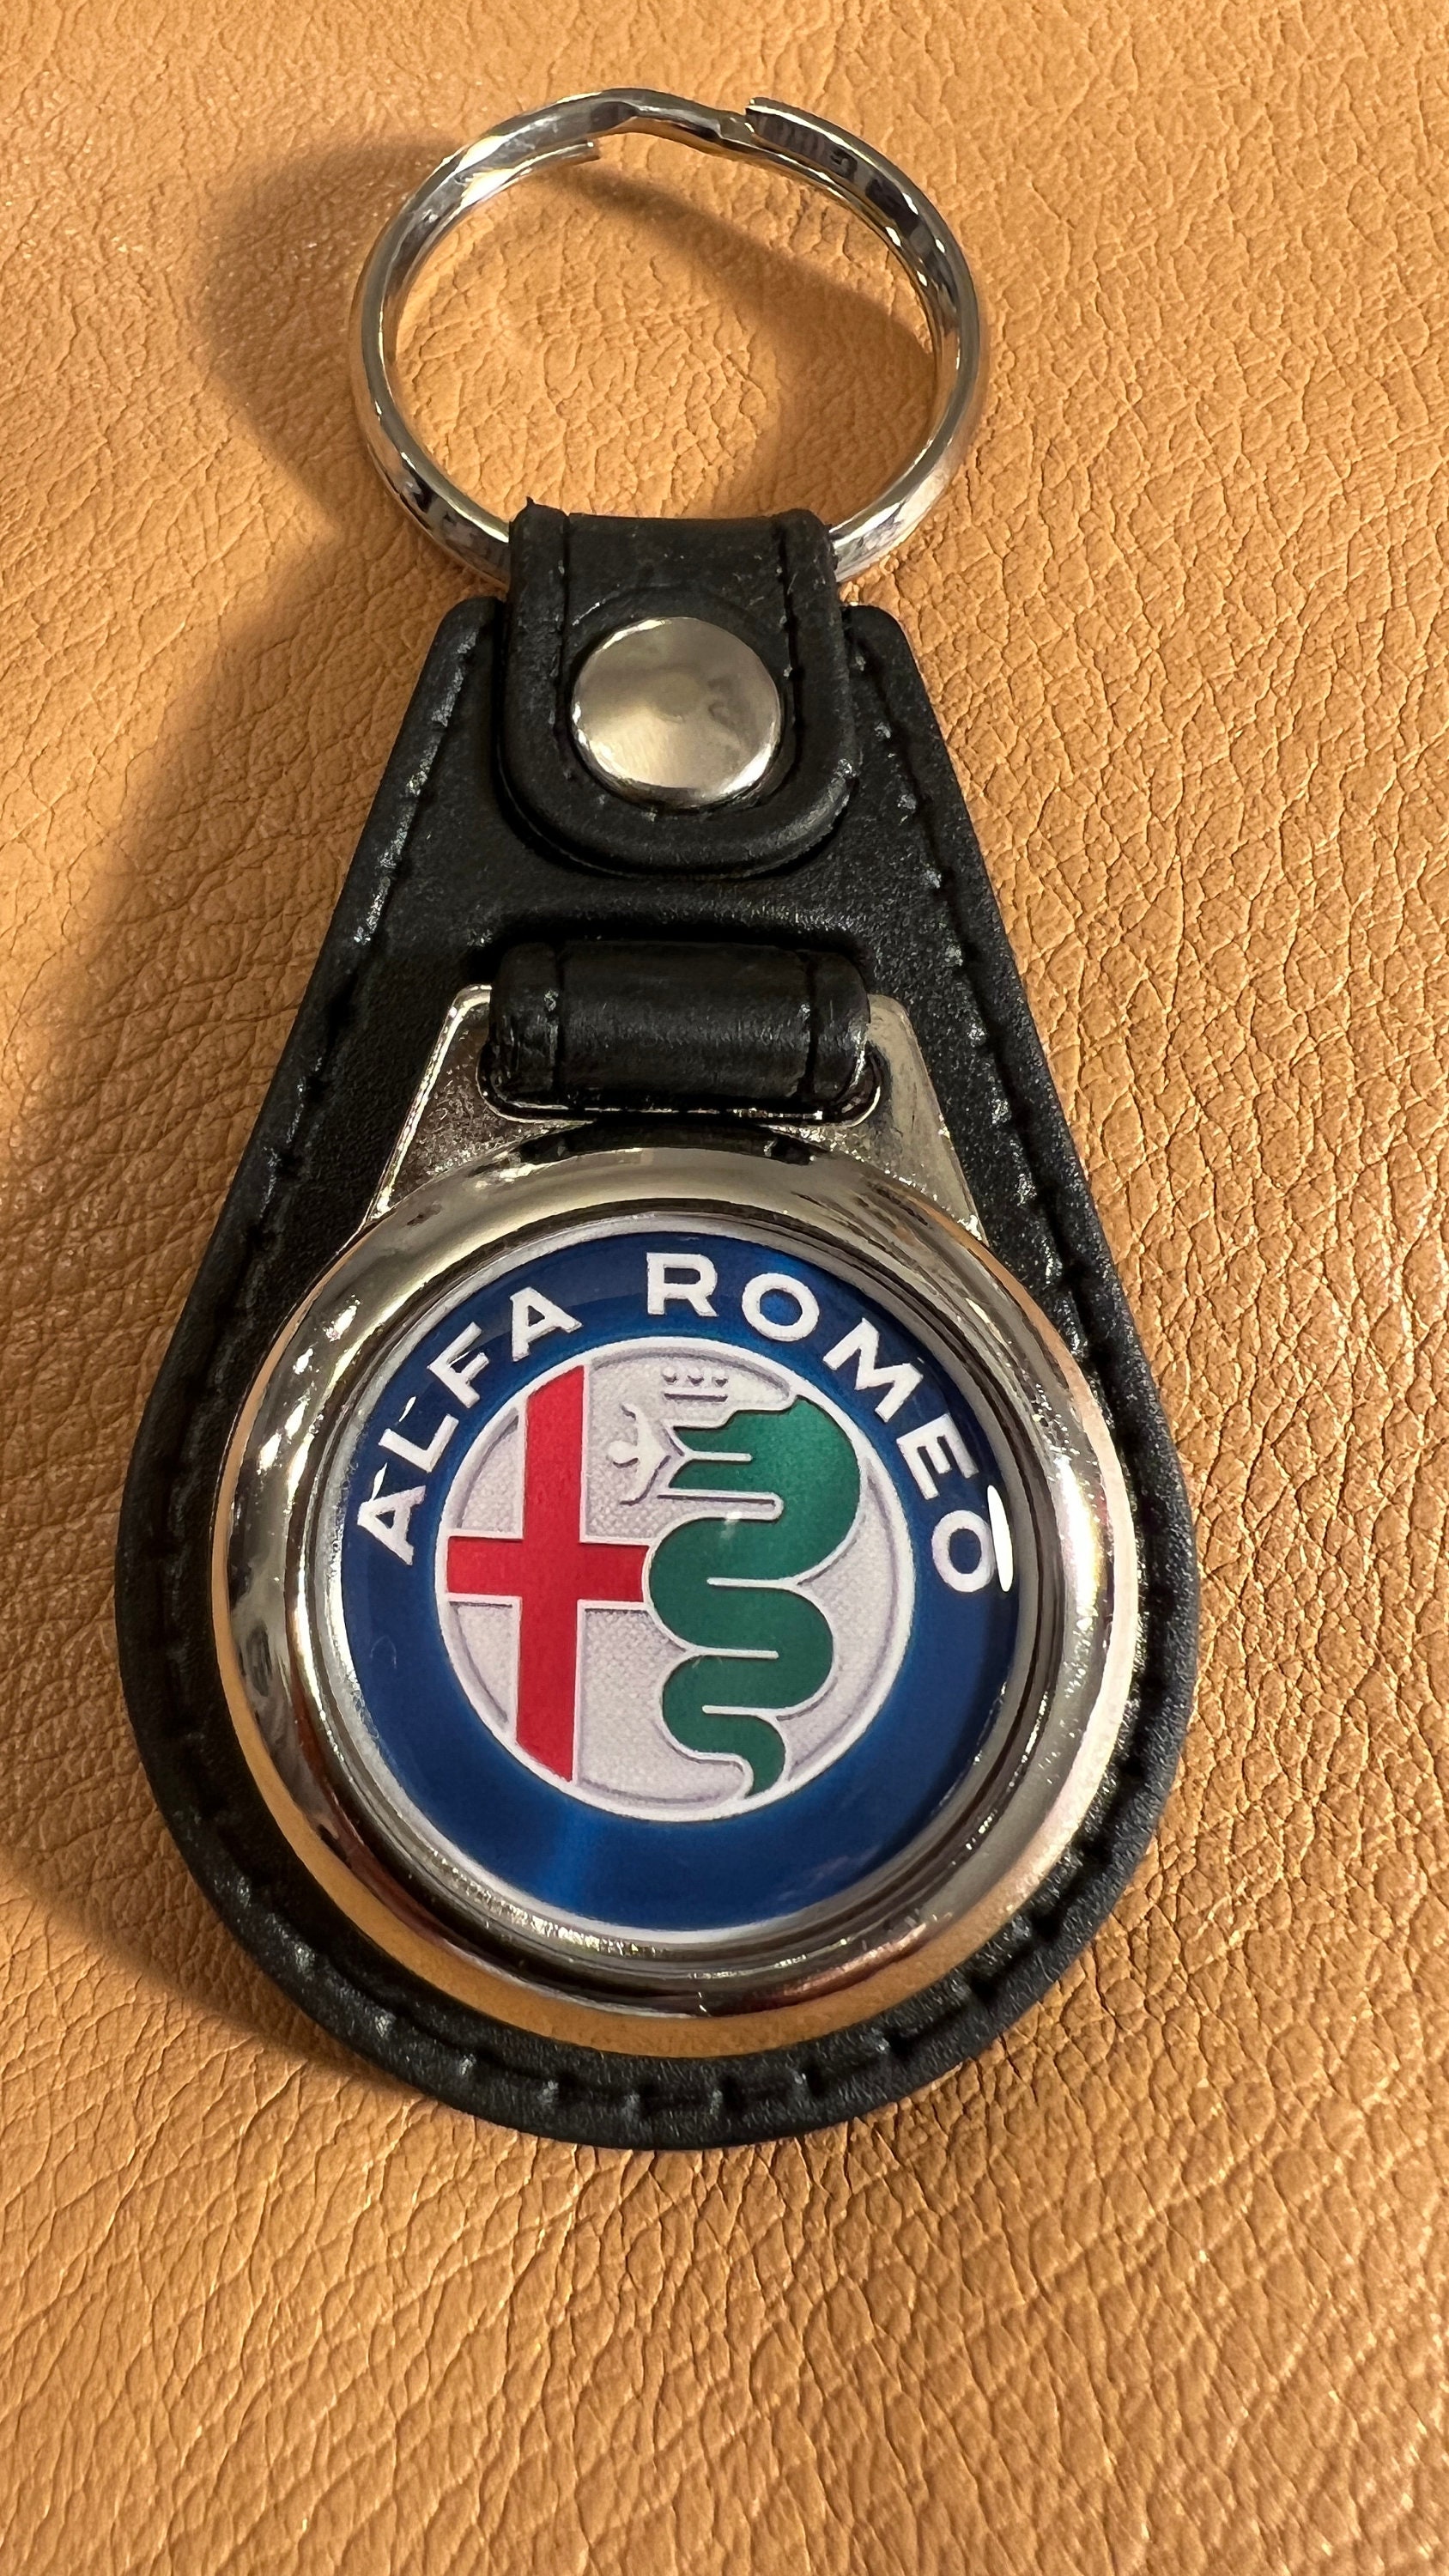 Schlüsselanhänger ALFA ROMEO MILAN Metall Anhänger 1960